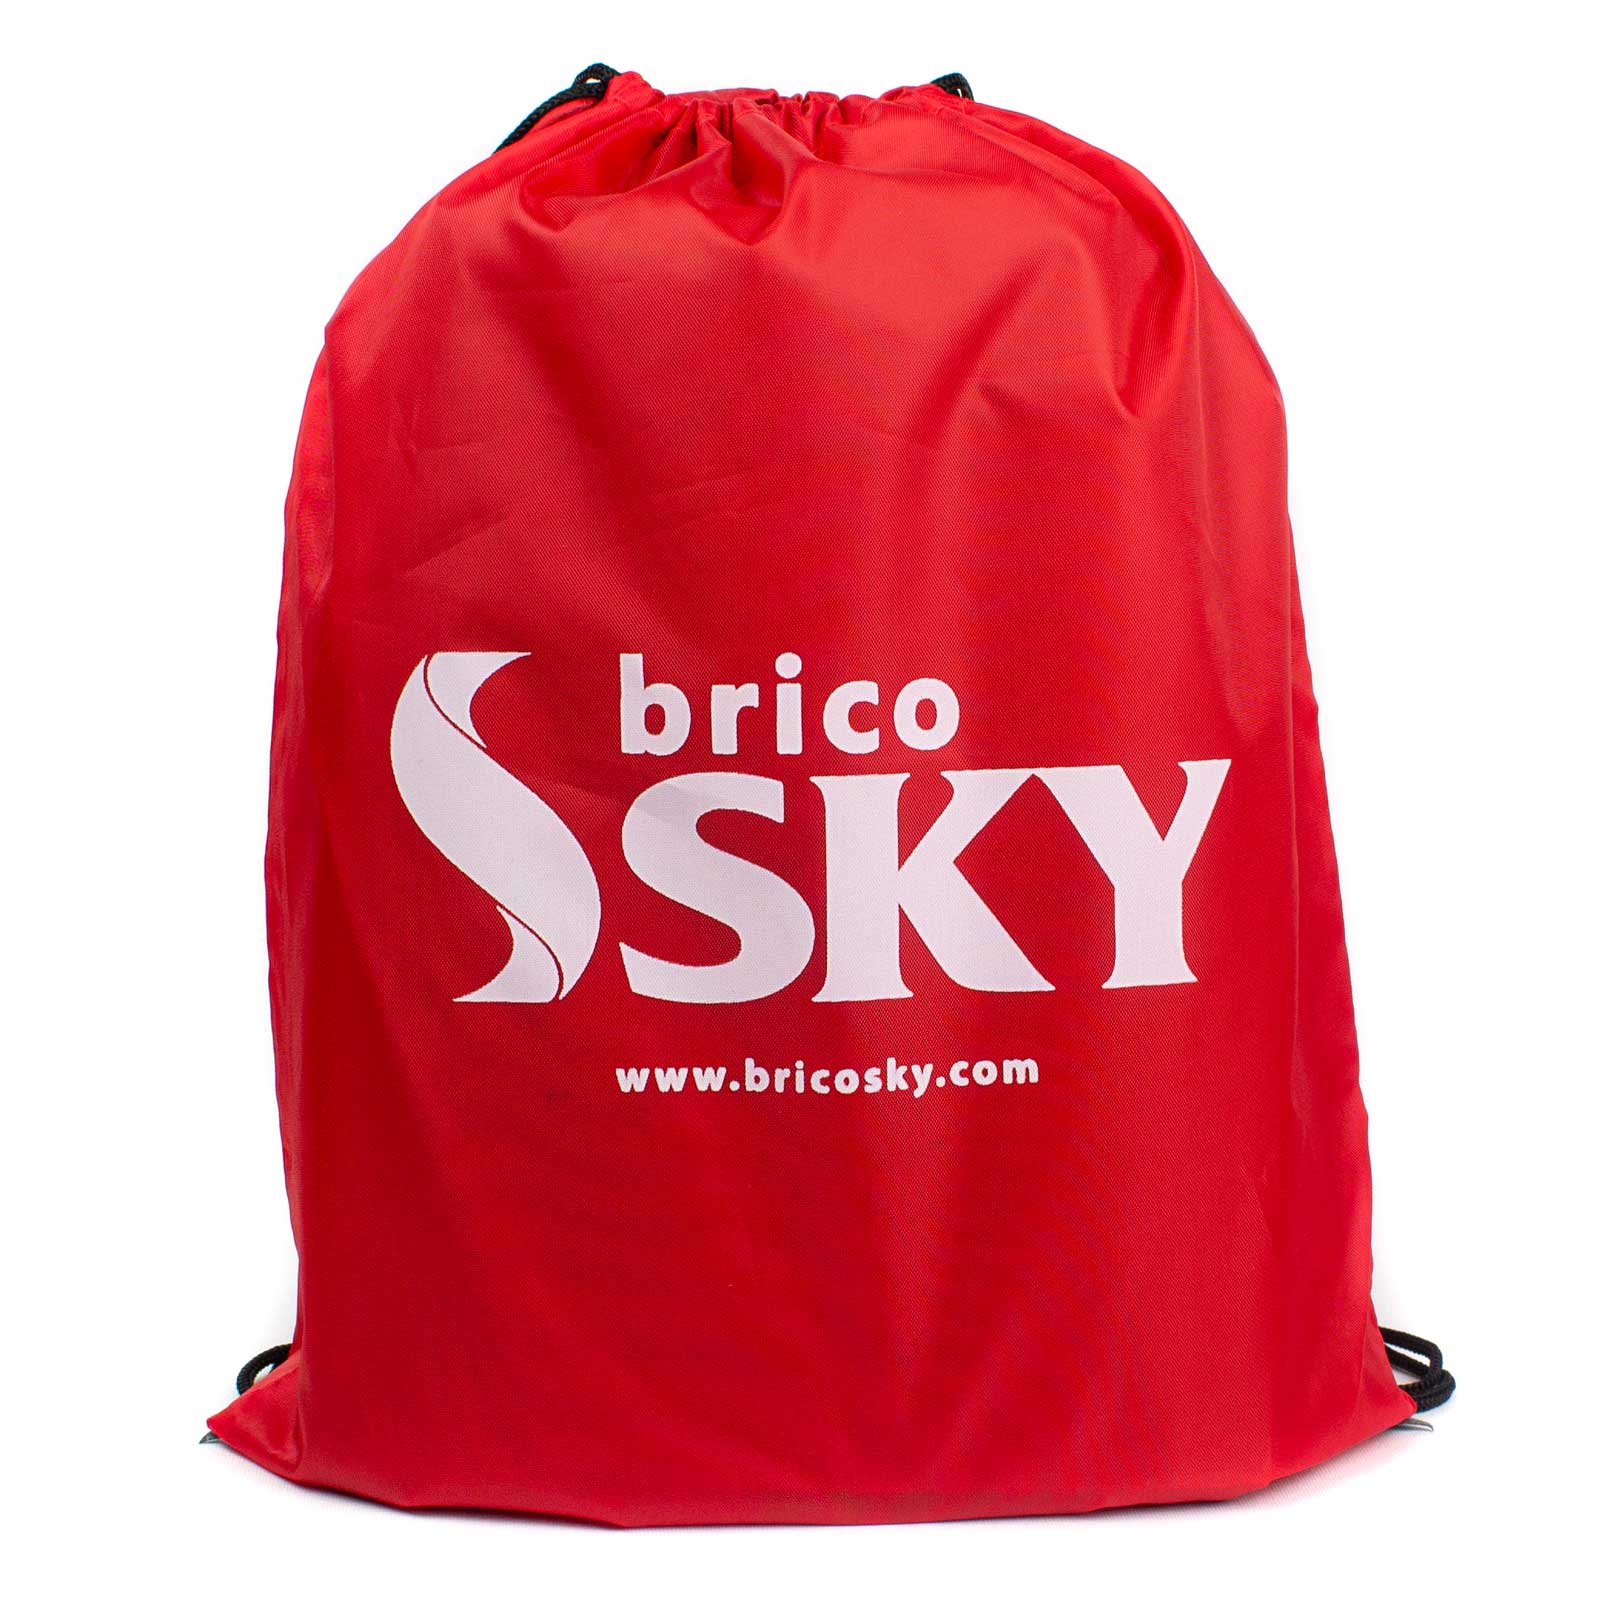 Sacca porta scarpe pieghevole multiuso colore rosso Bricosky - Brico Sky